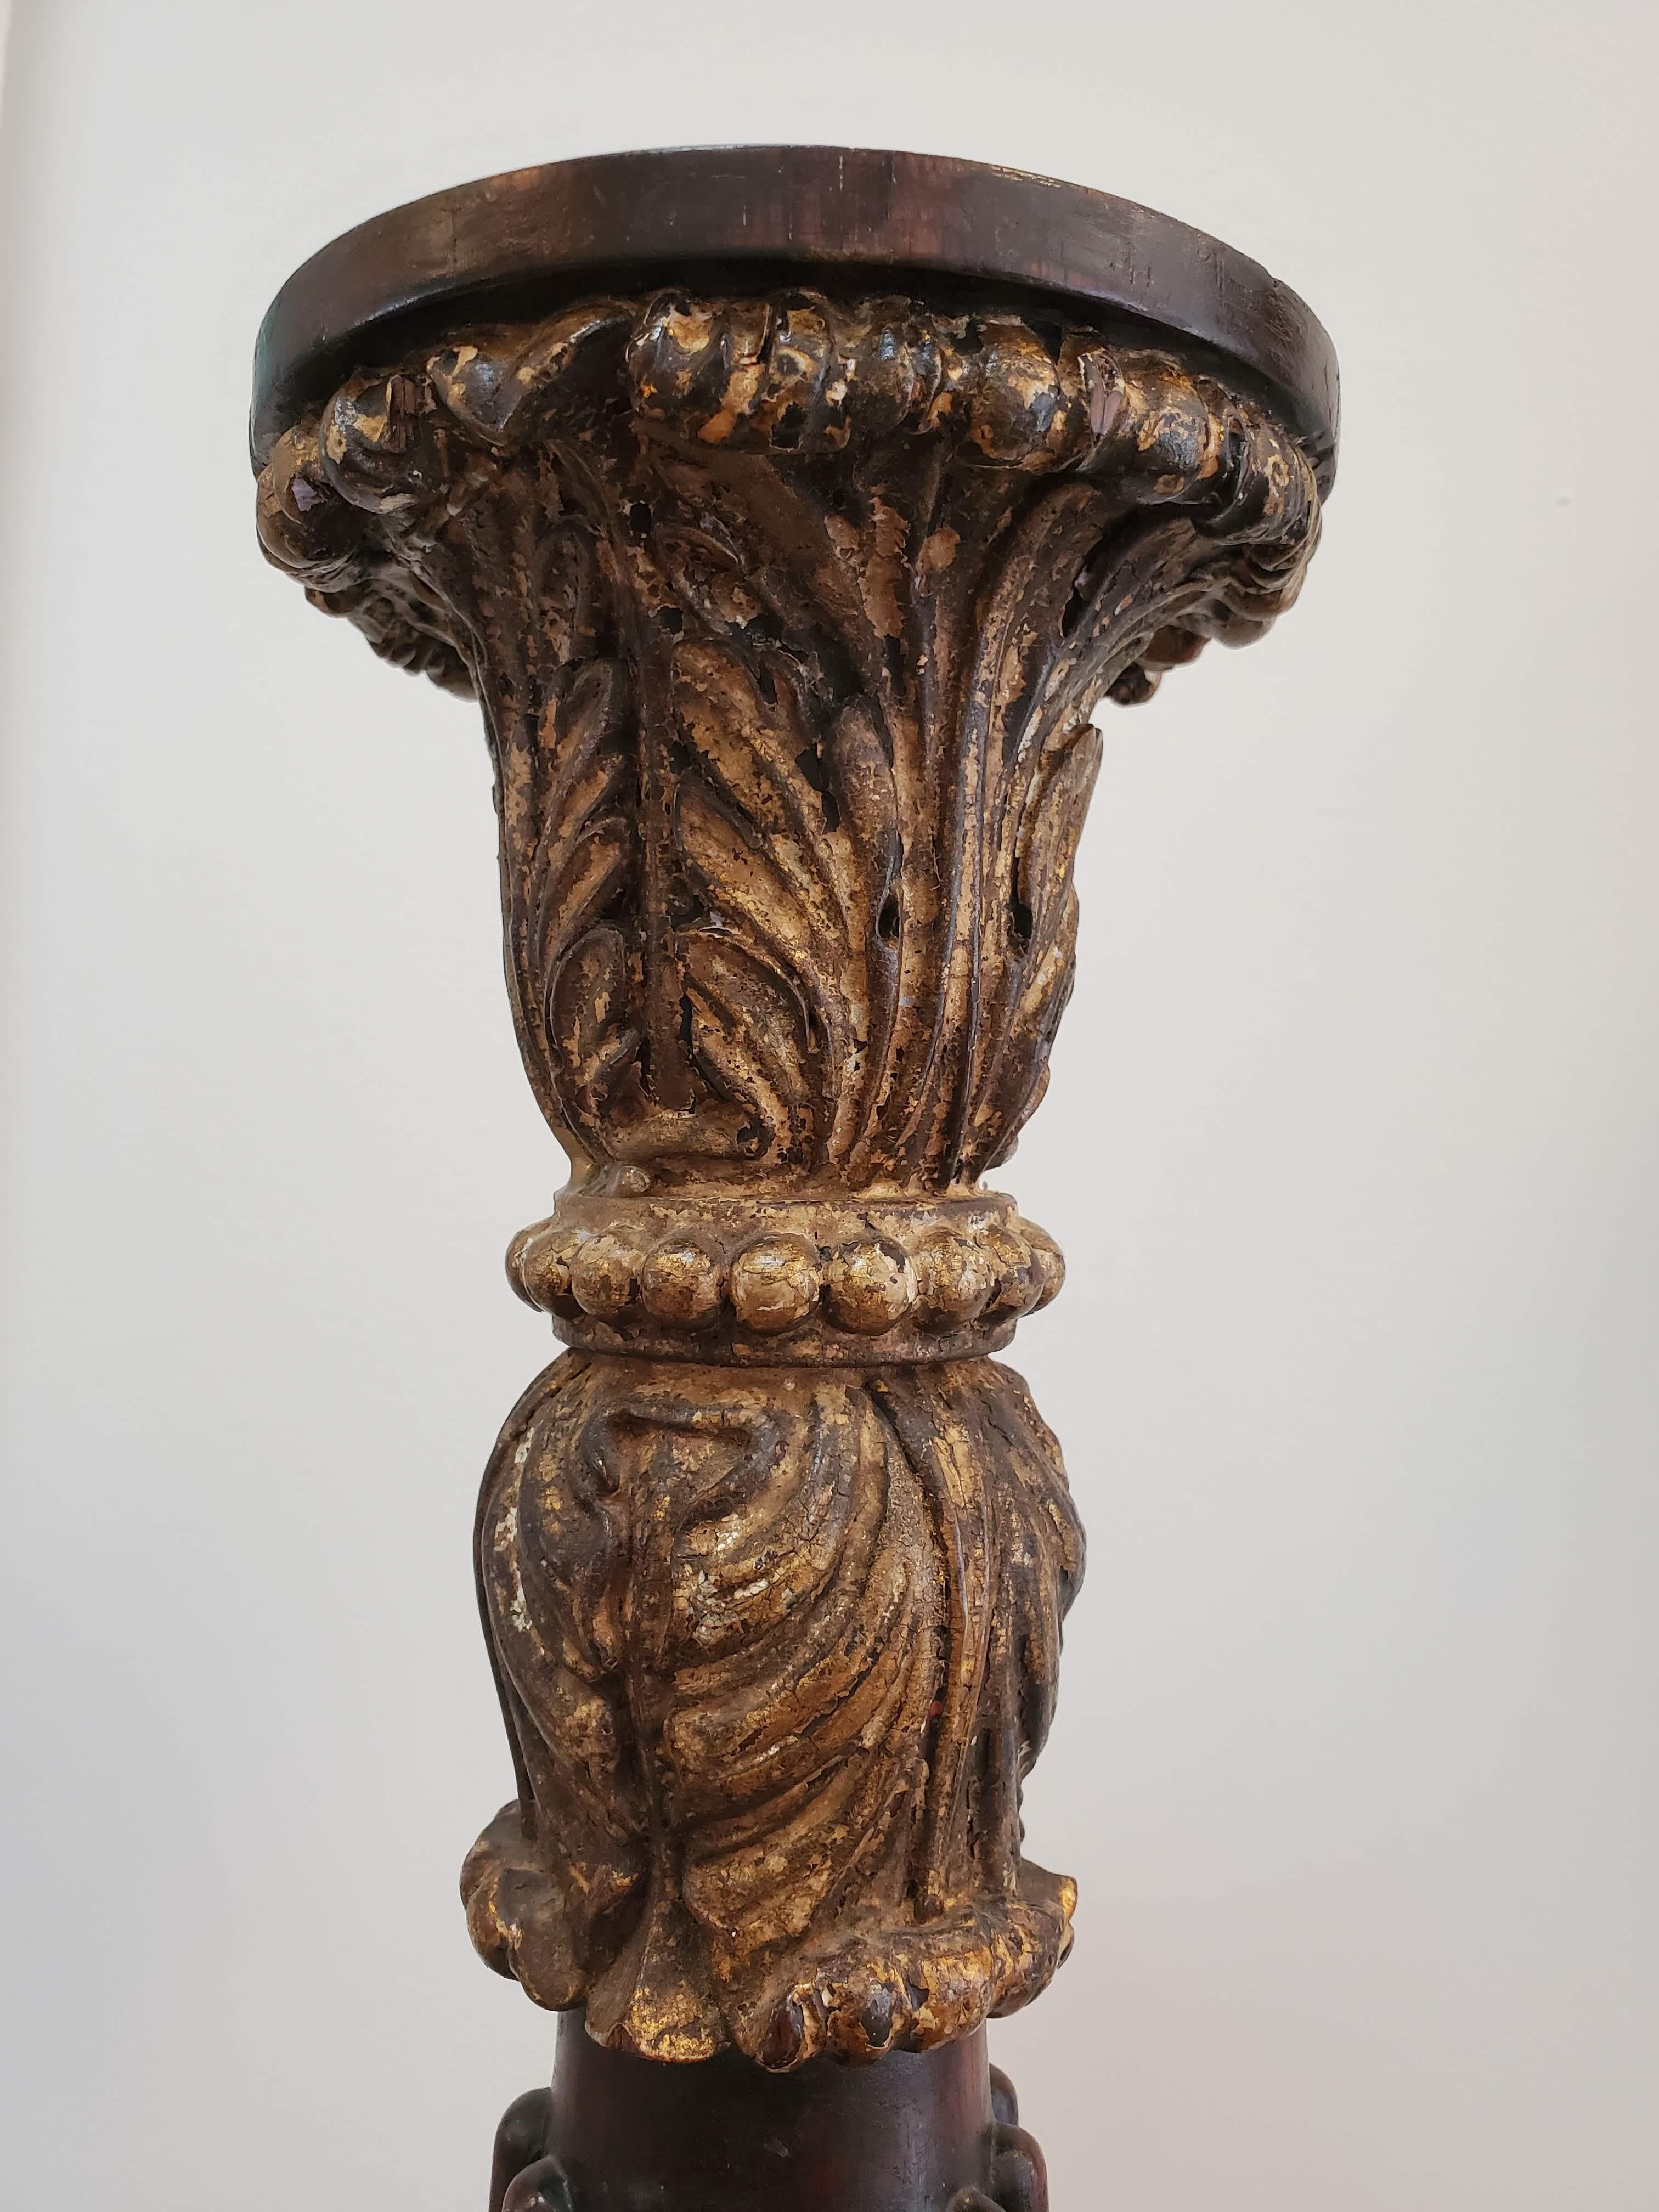 colonne anglaise du XVIIIe siècle en acajou de Cuba avec bordure décorative et chapiteau finement sculpté. La base conserve la dorure à l'eau d'origine.
Angleterre, vers 1740
Mesures : 32.5